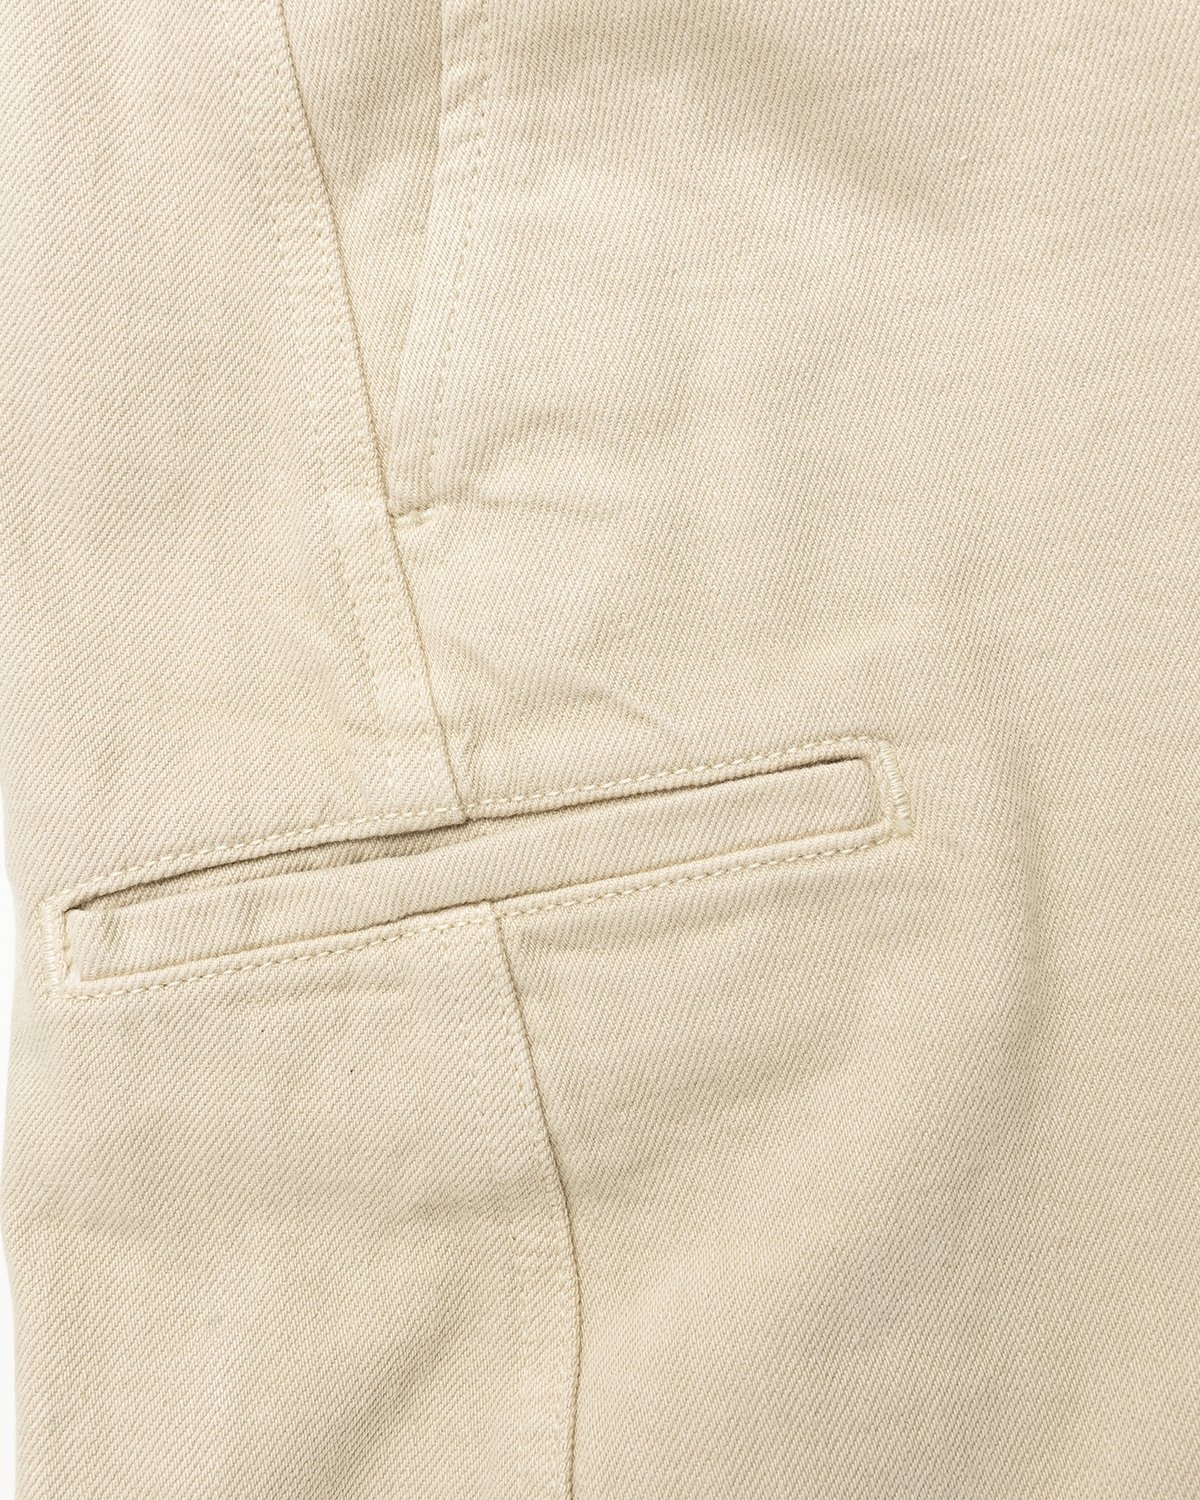 Lemaire – Italian-Woven Denim Sailor Pants Saltpeter - Pants - Beige - Image 5